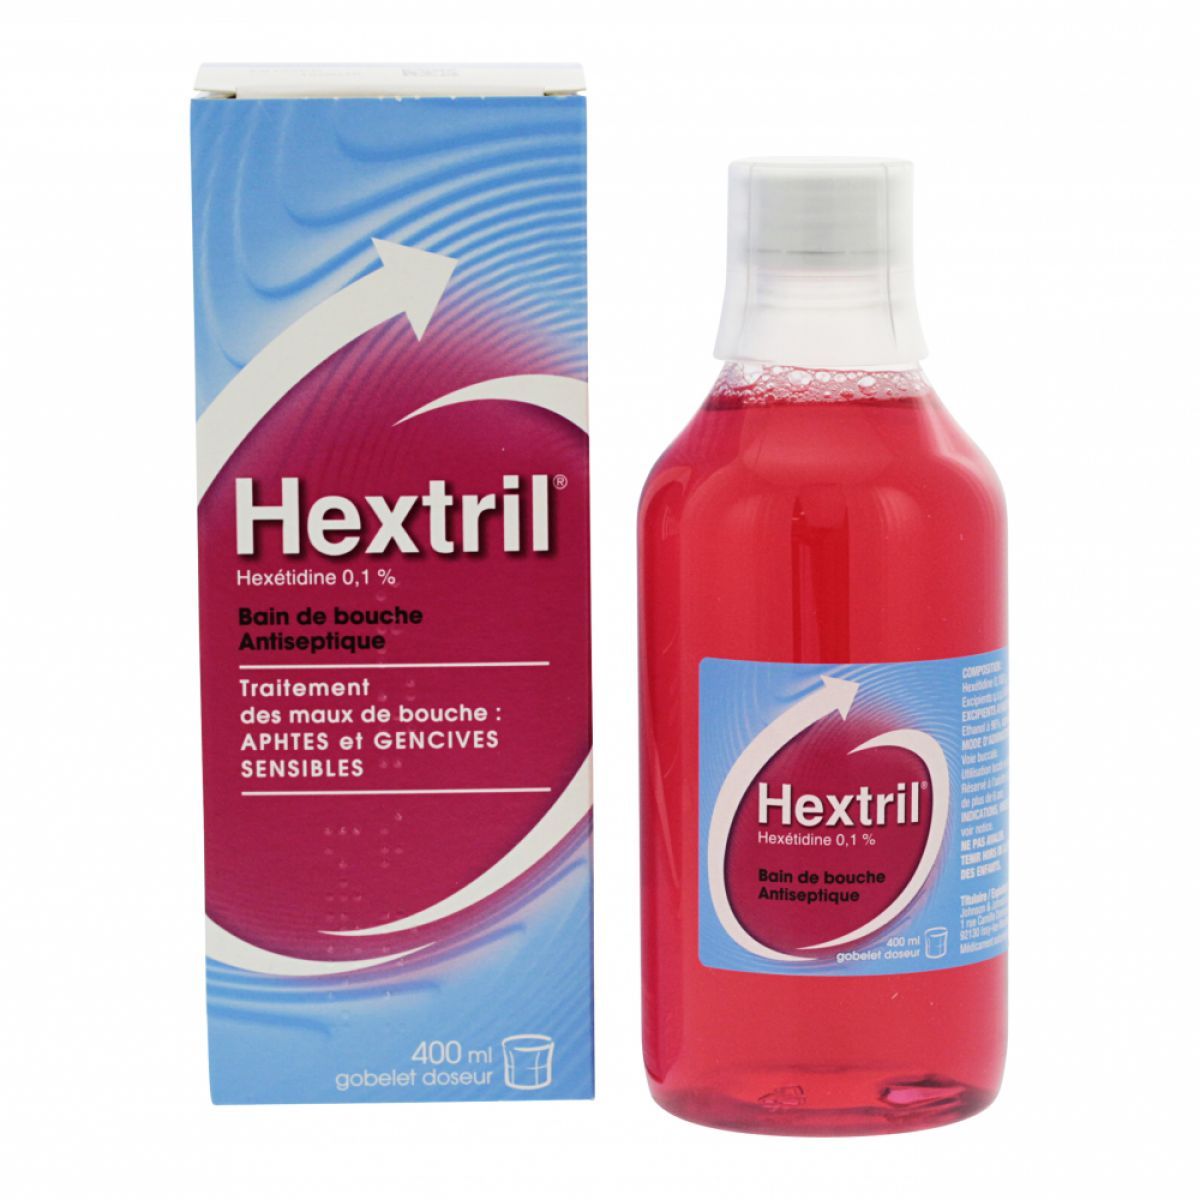 hextril bain de bouche antiseptique soigne les maux de bouche